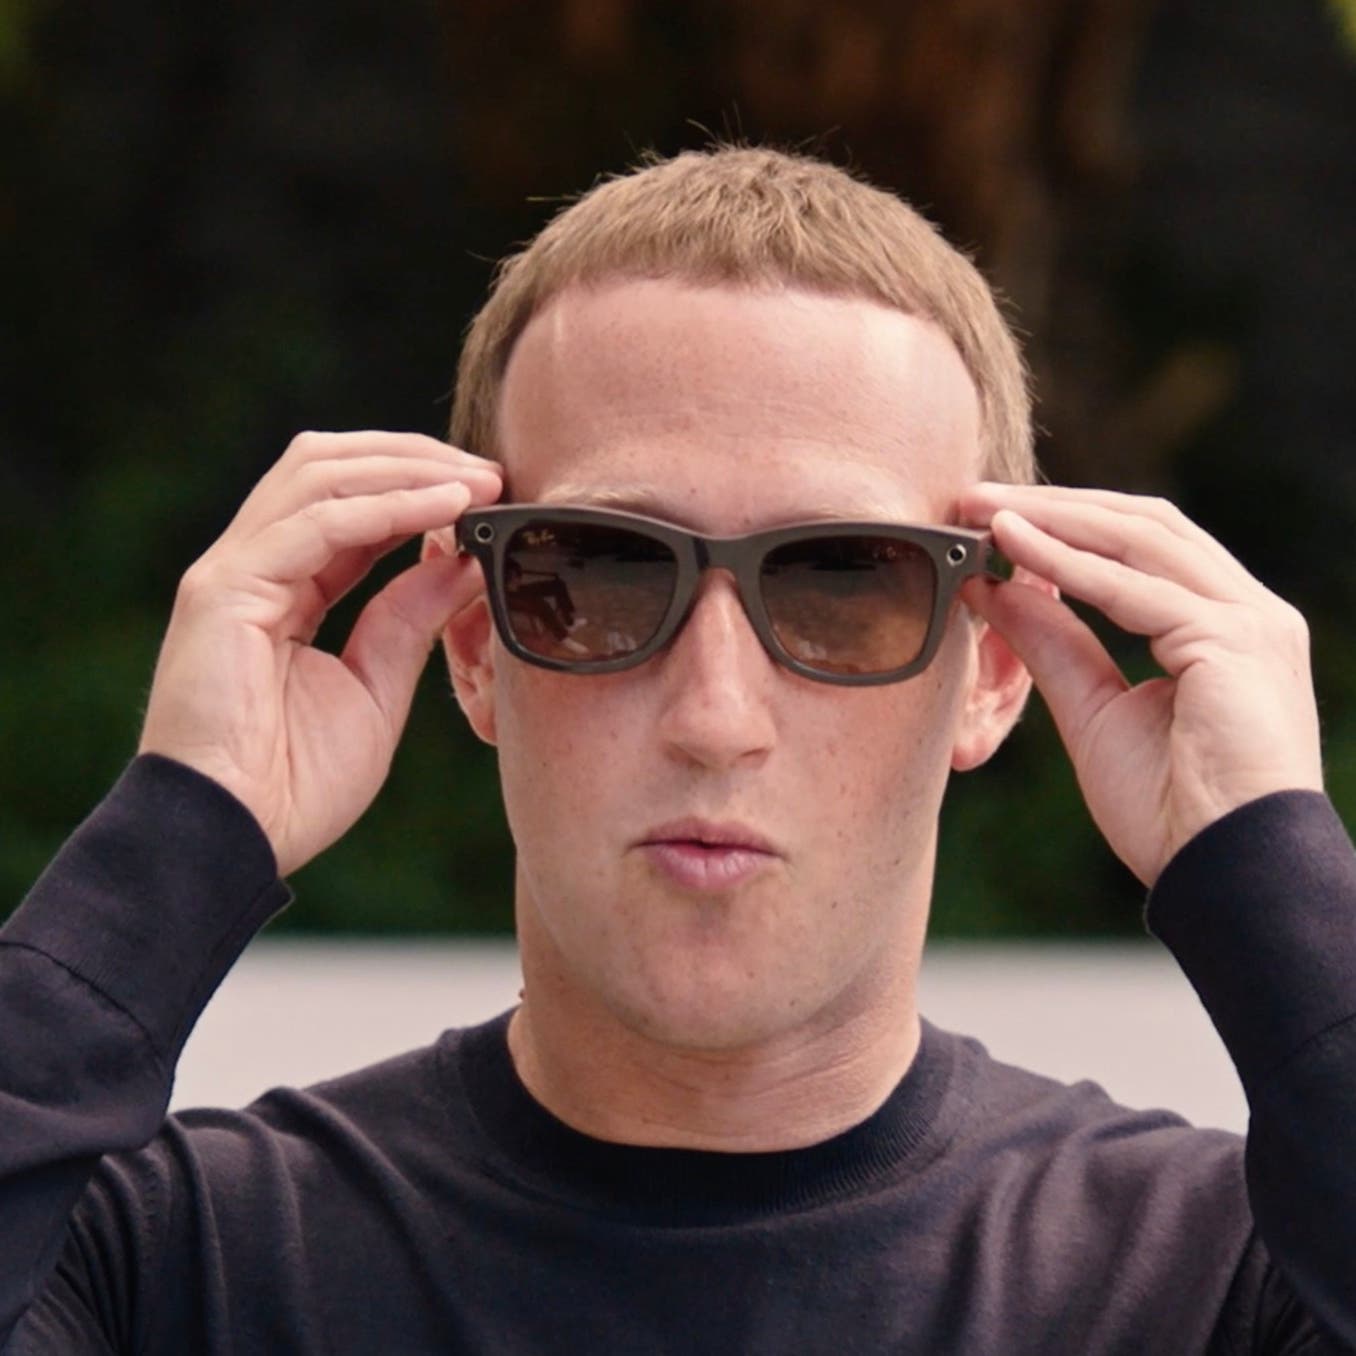 فيسبوك تدخل سوقاً جديدة بنظارات ذكية تلتقط الصور وتجري المكالمات